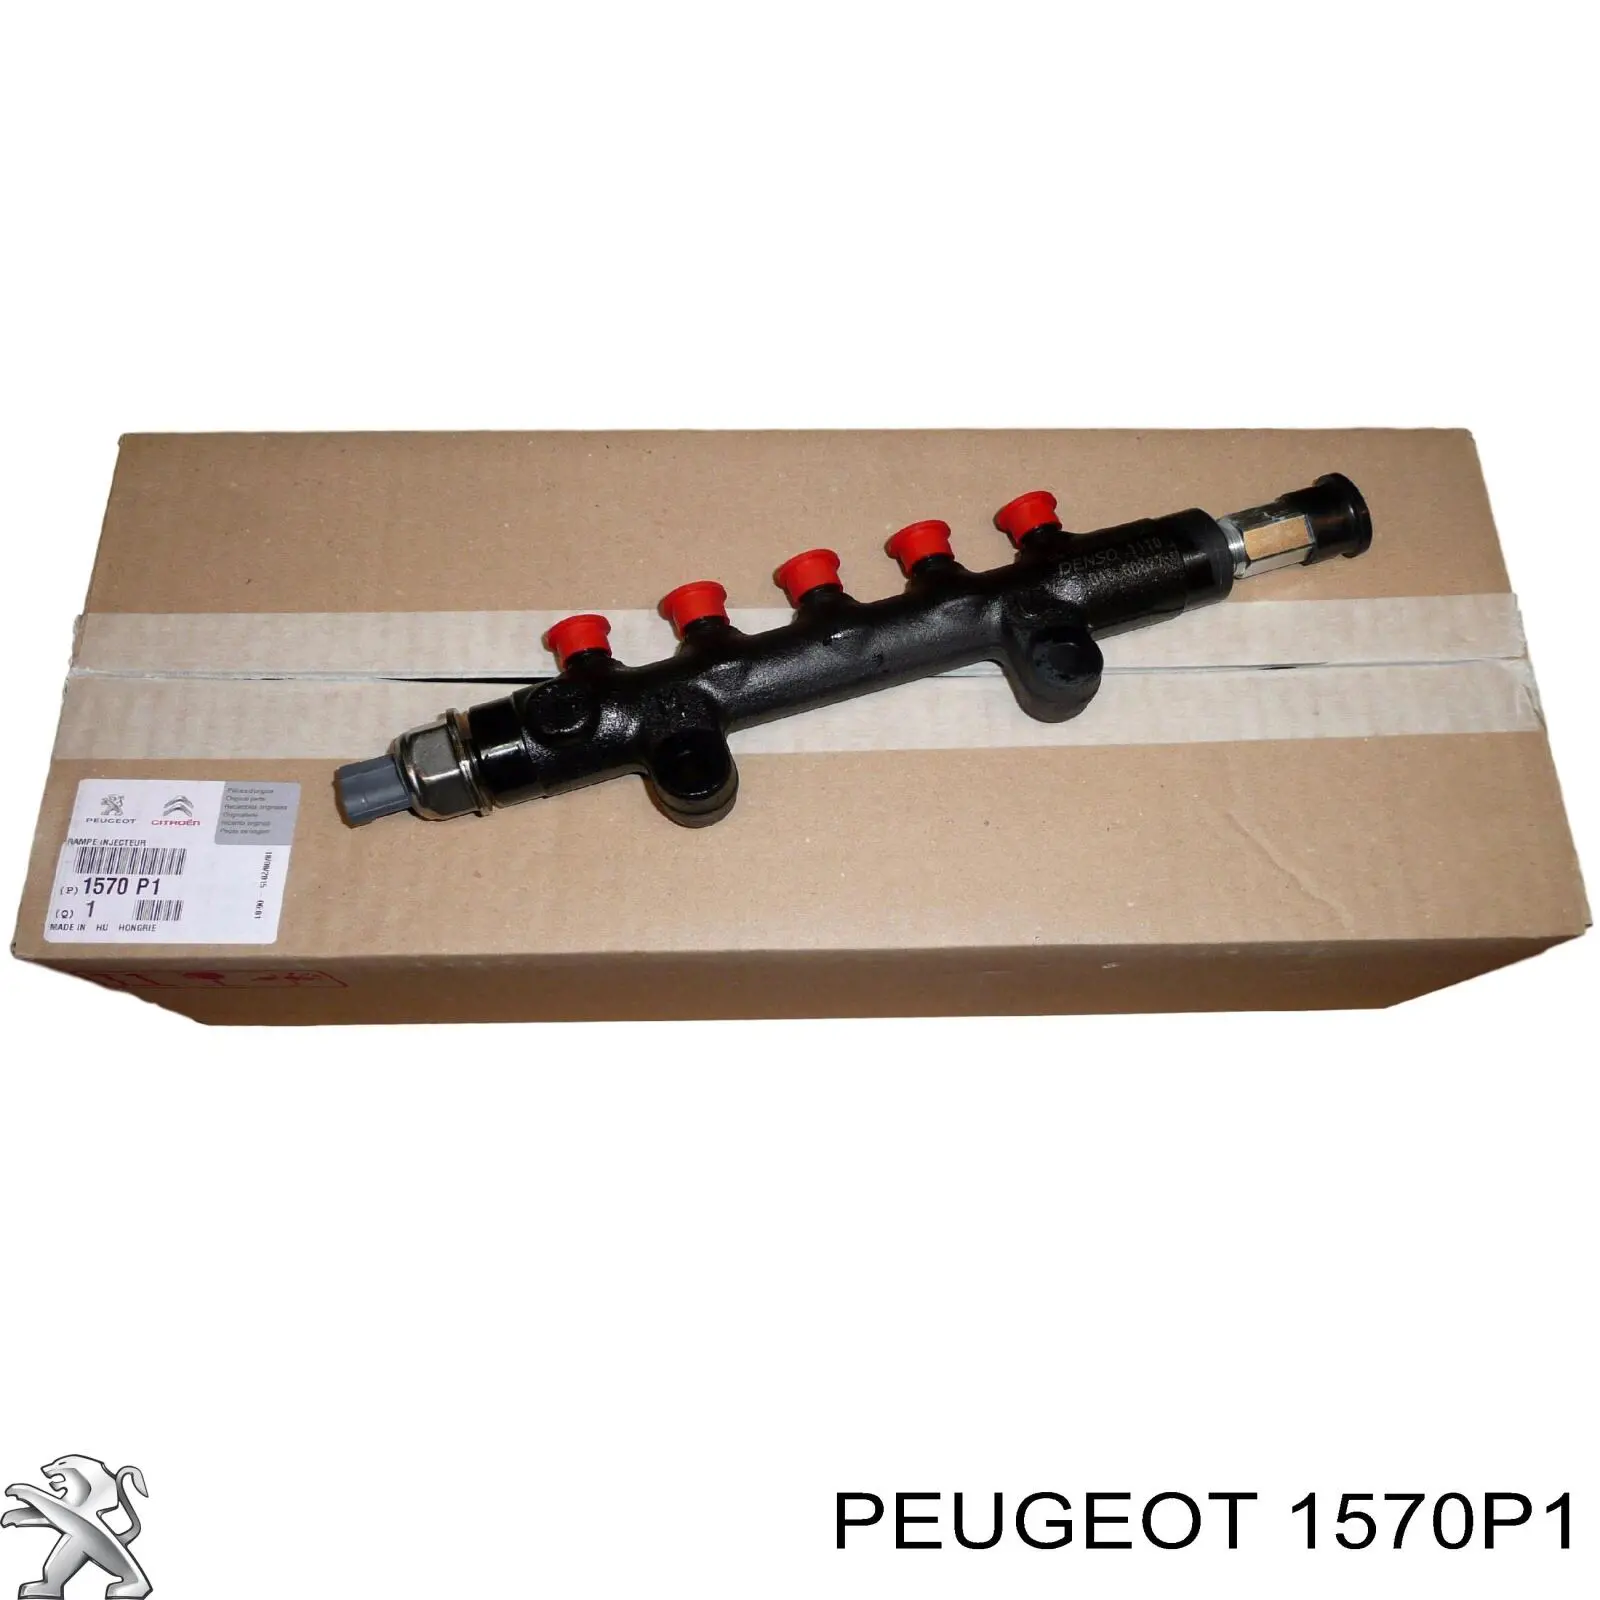 1570P1 Peugeot/Citroen rampa de inyectores